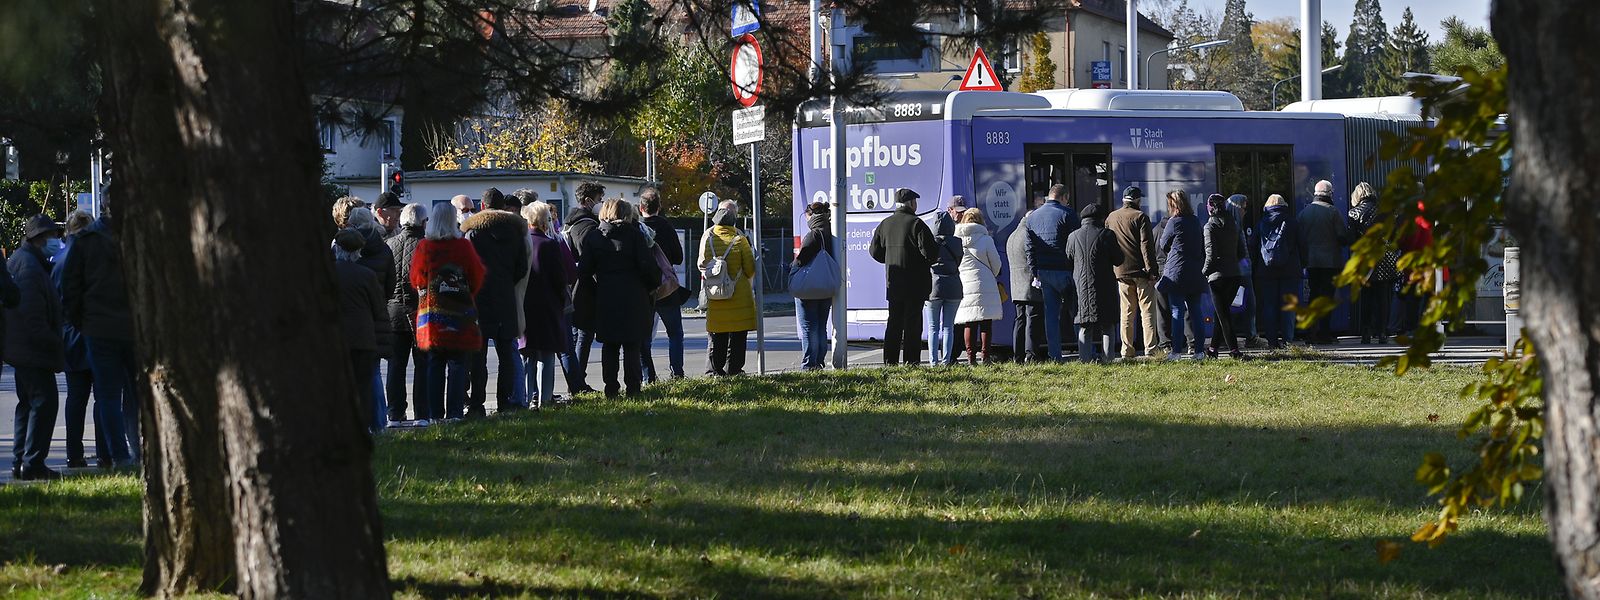 Impfwillige stehen vor einem Impfbus in Wien-Döbling.